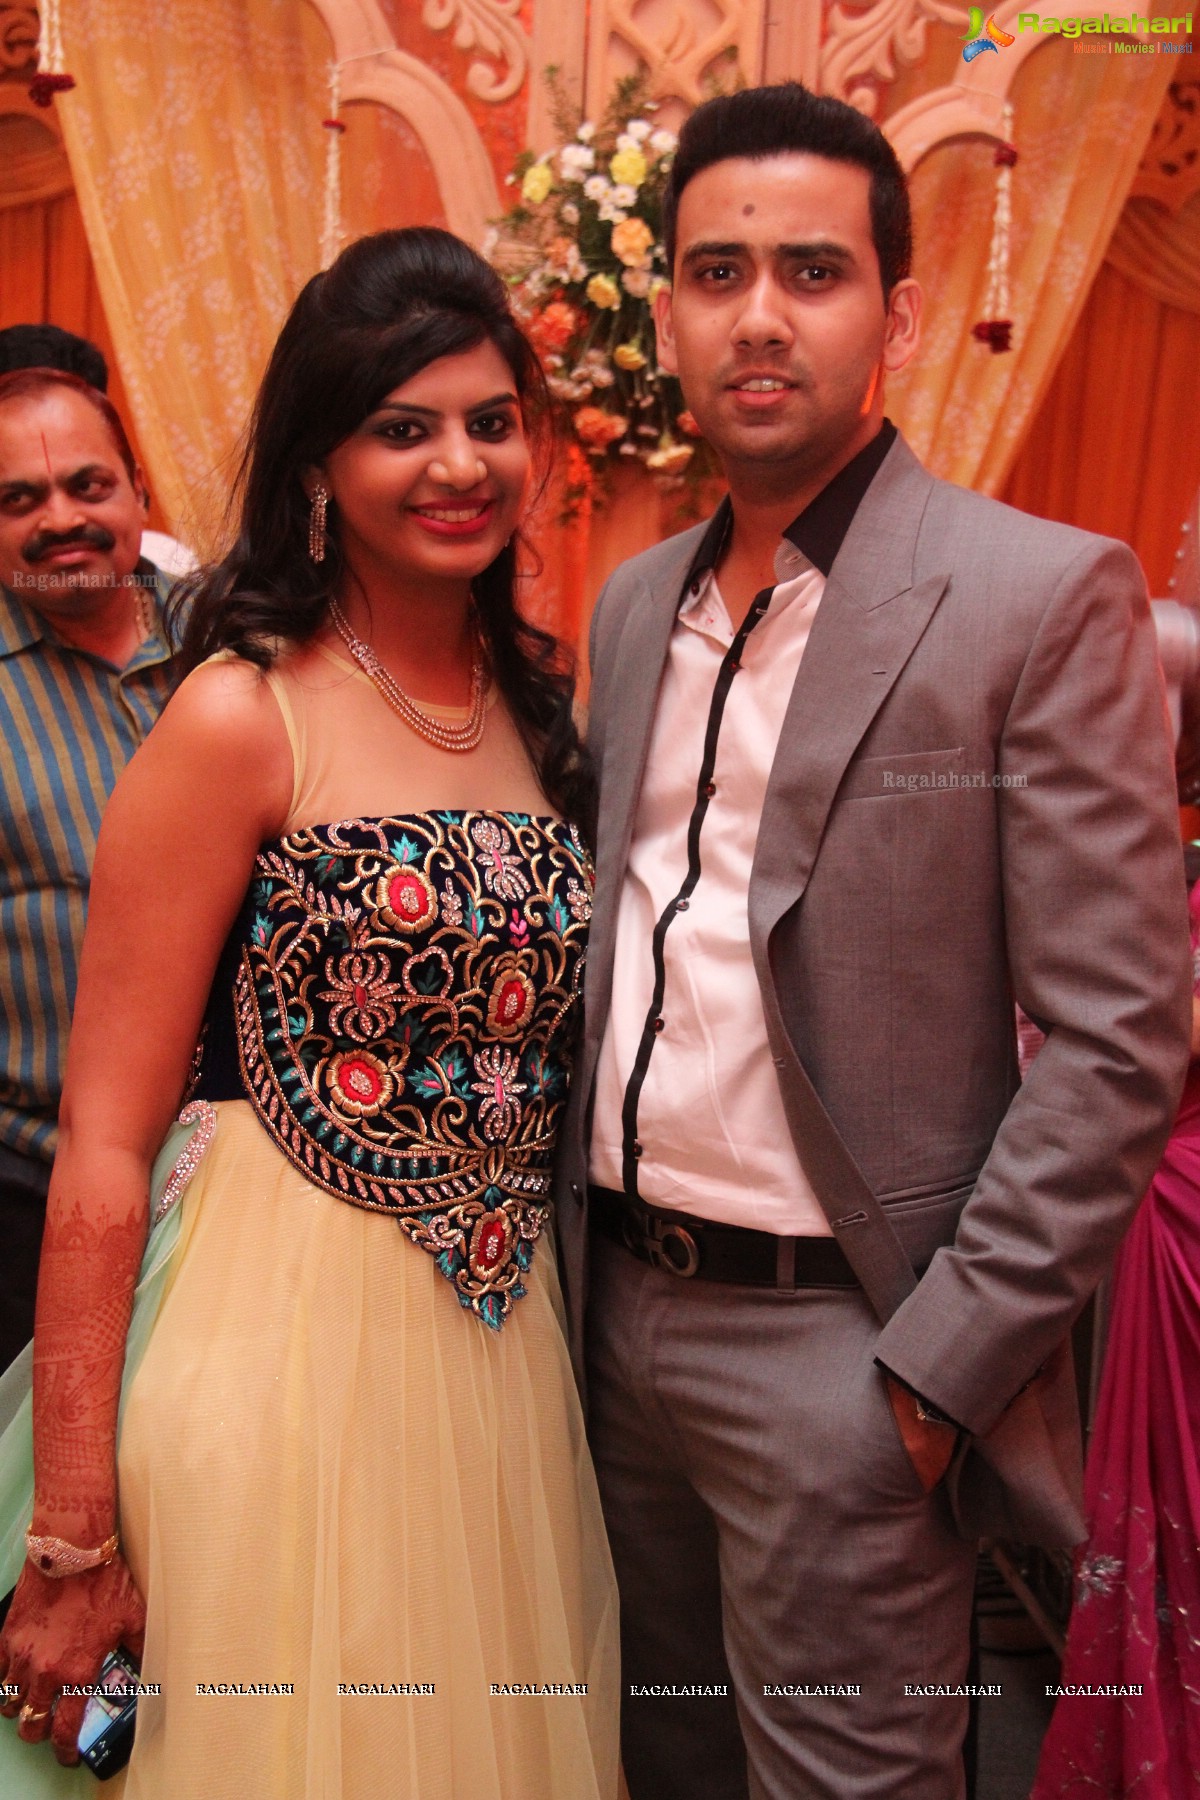 Ramesh Kumar Bung's Daughter Wedding